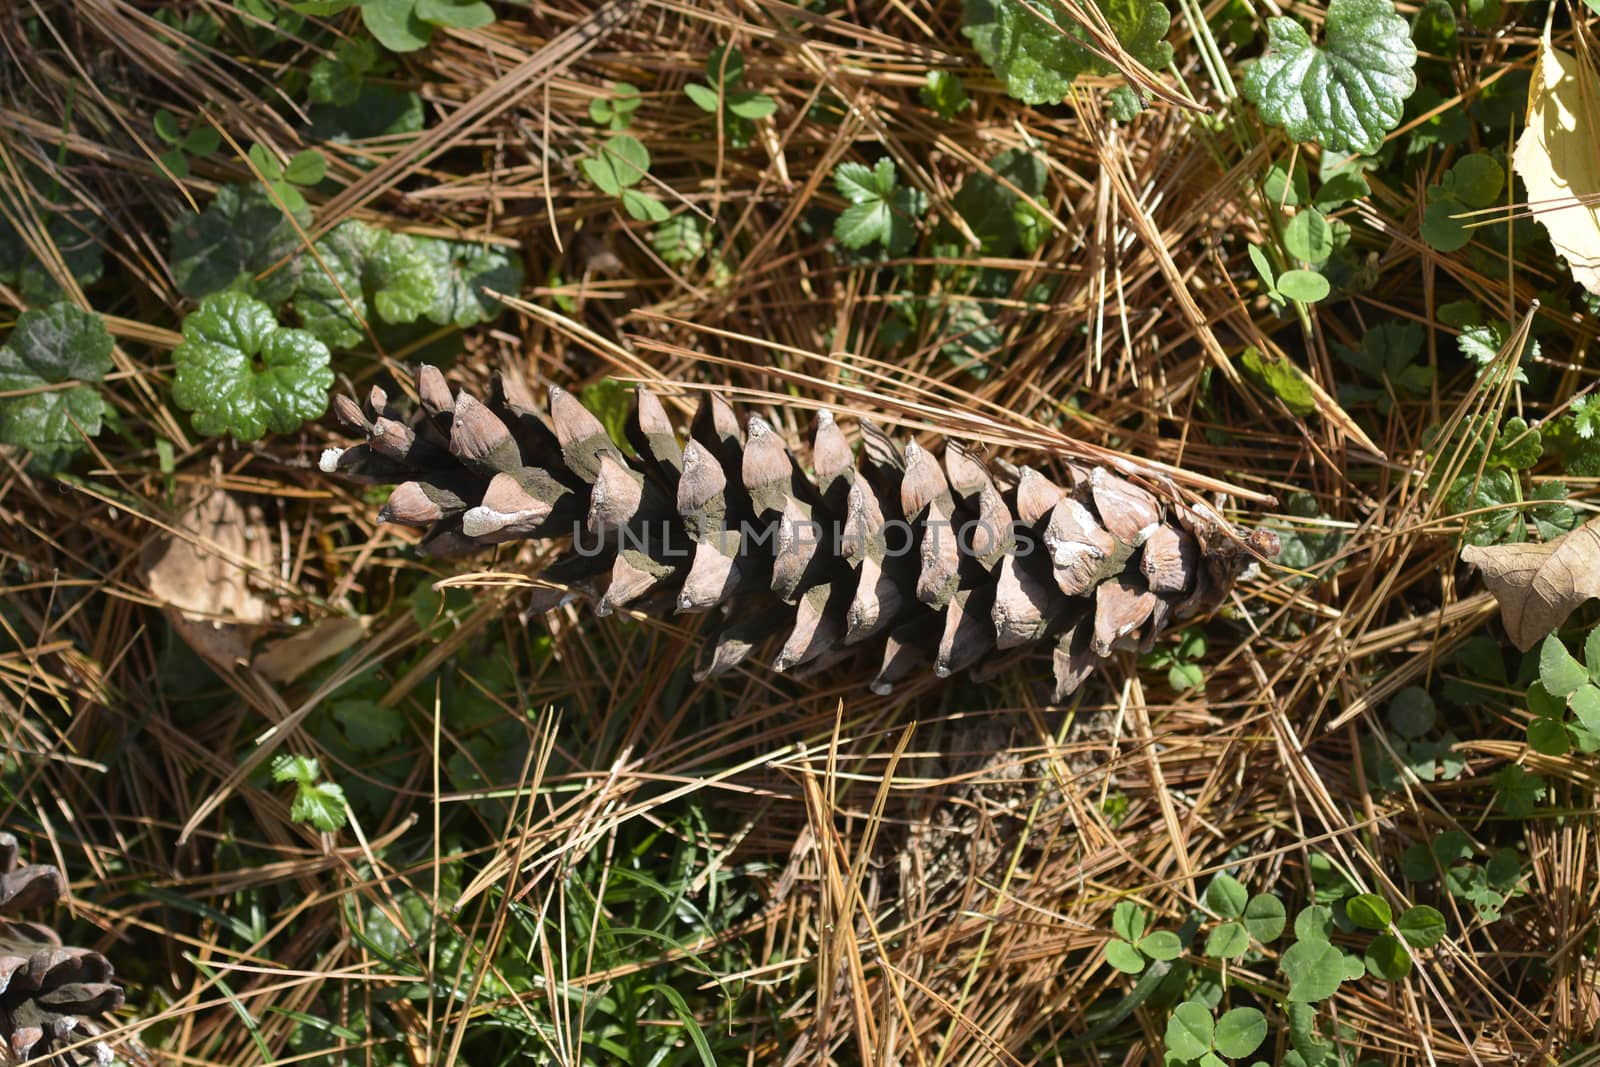 Eastern white pine cone on the ground - Latin name - Pinus strobus